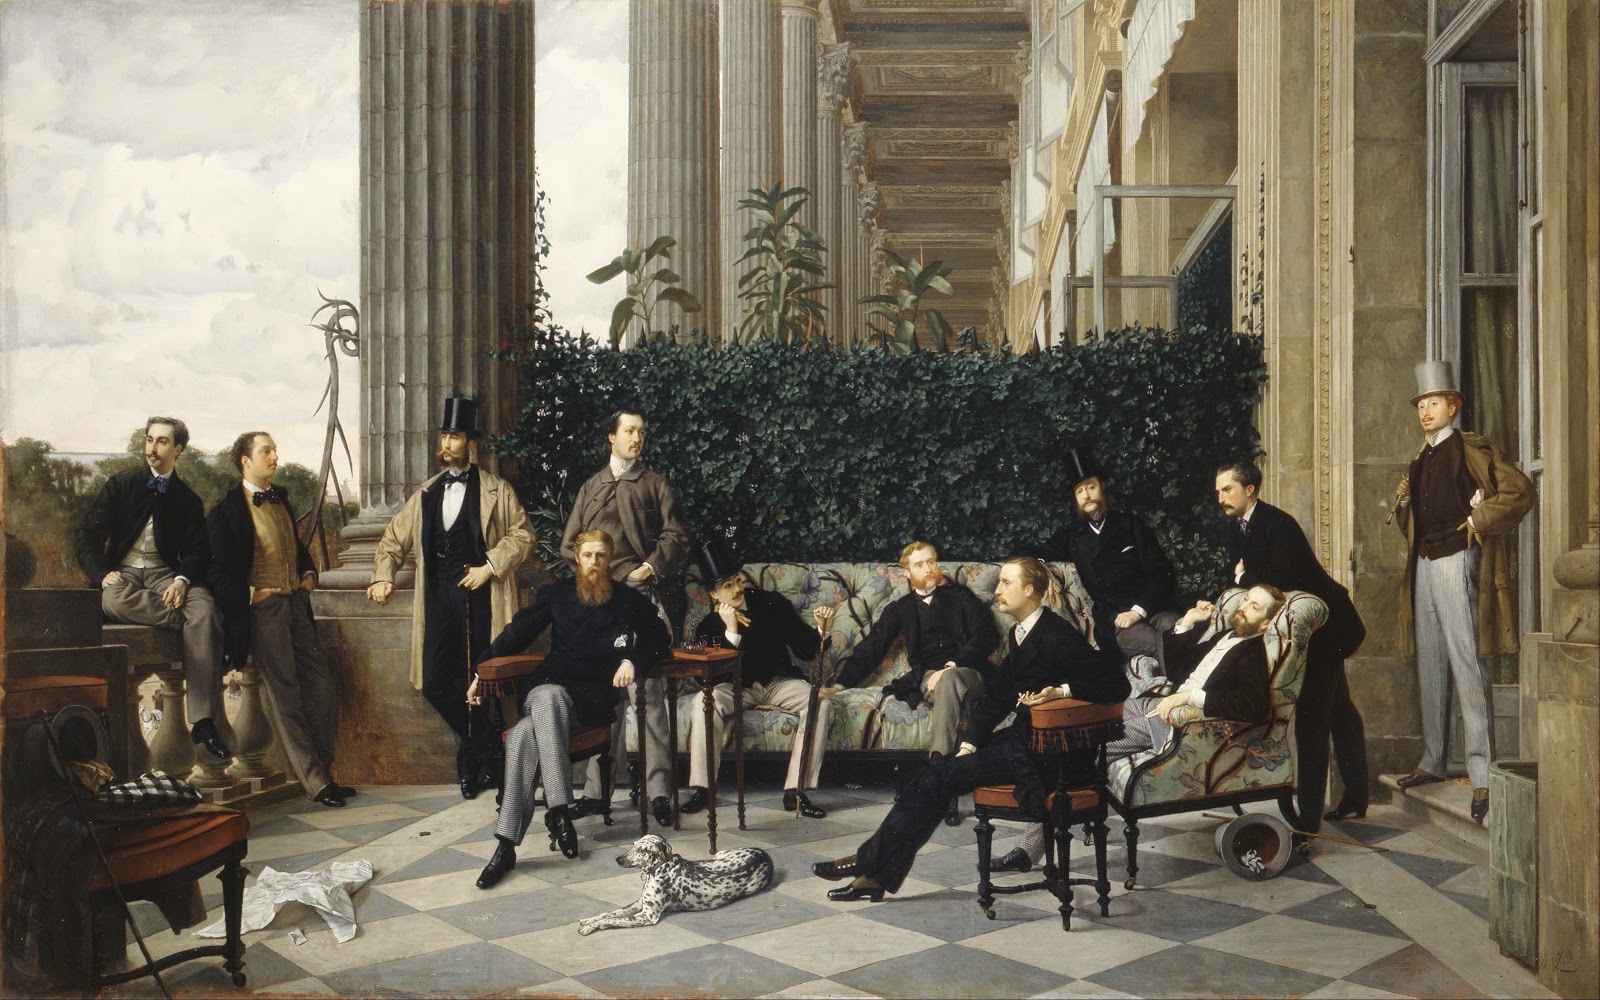 James+Tissot-1836-1902 (108).jpg